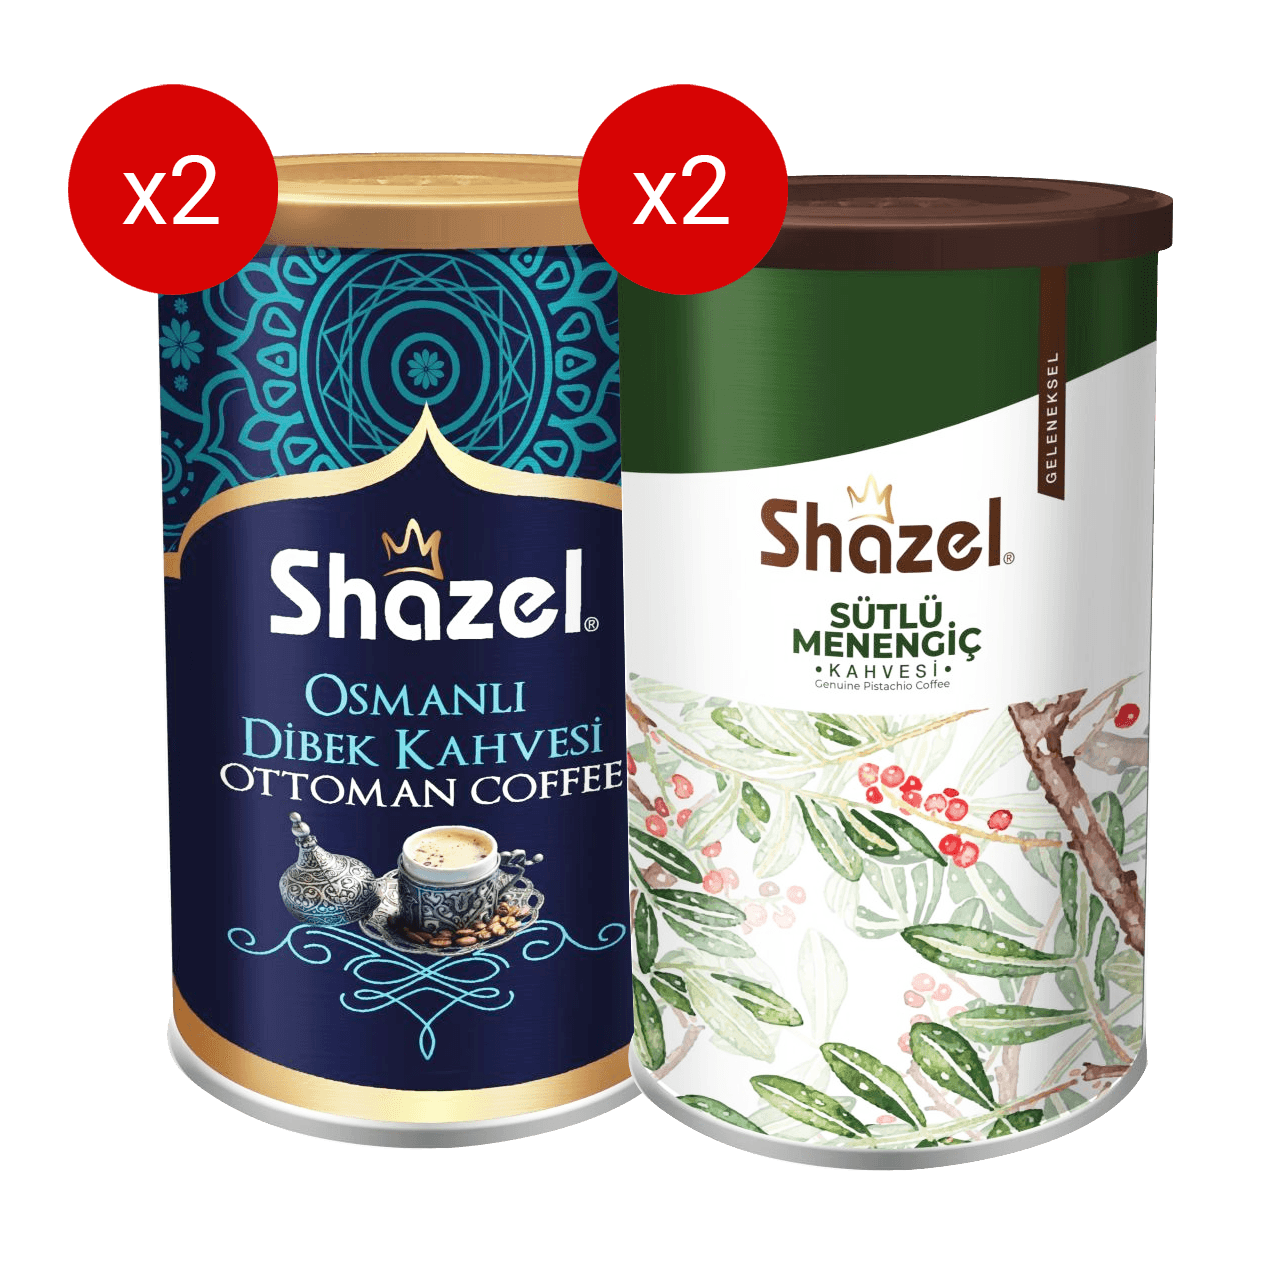 Shazel Ottoman & Pistachio Coffee 250g X 4 Pieces 